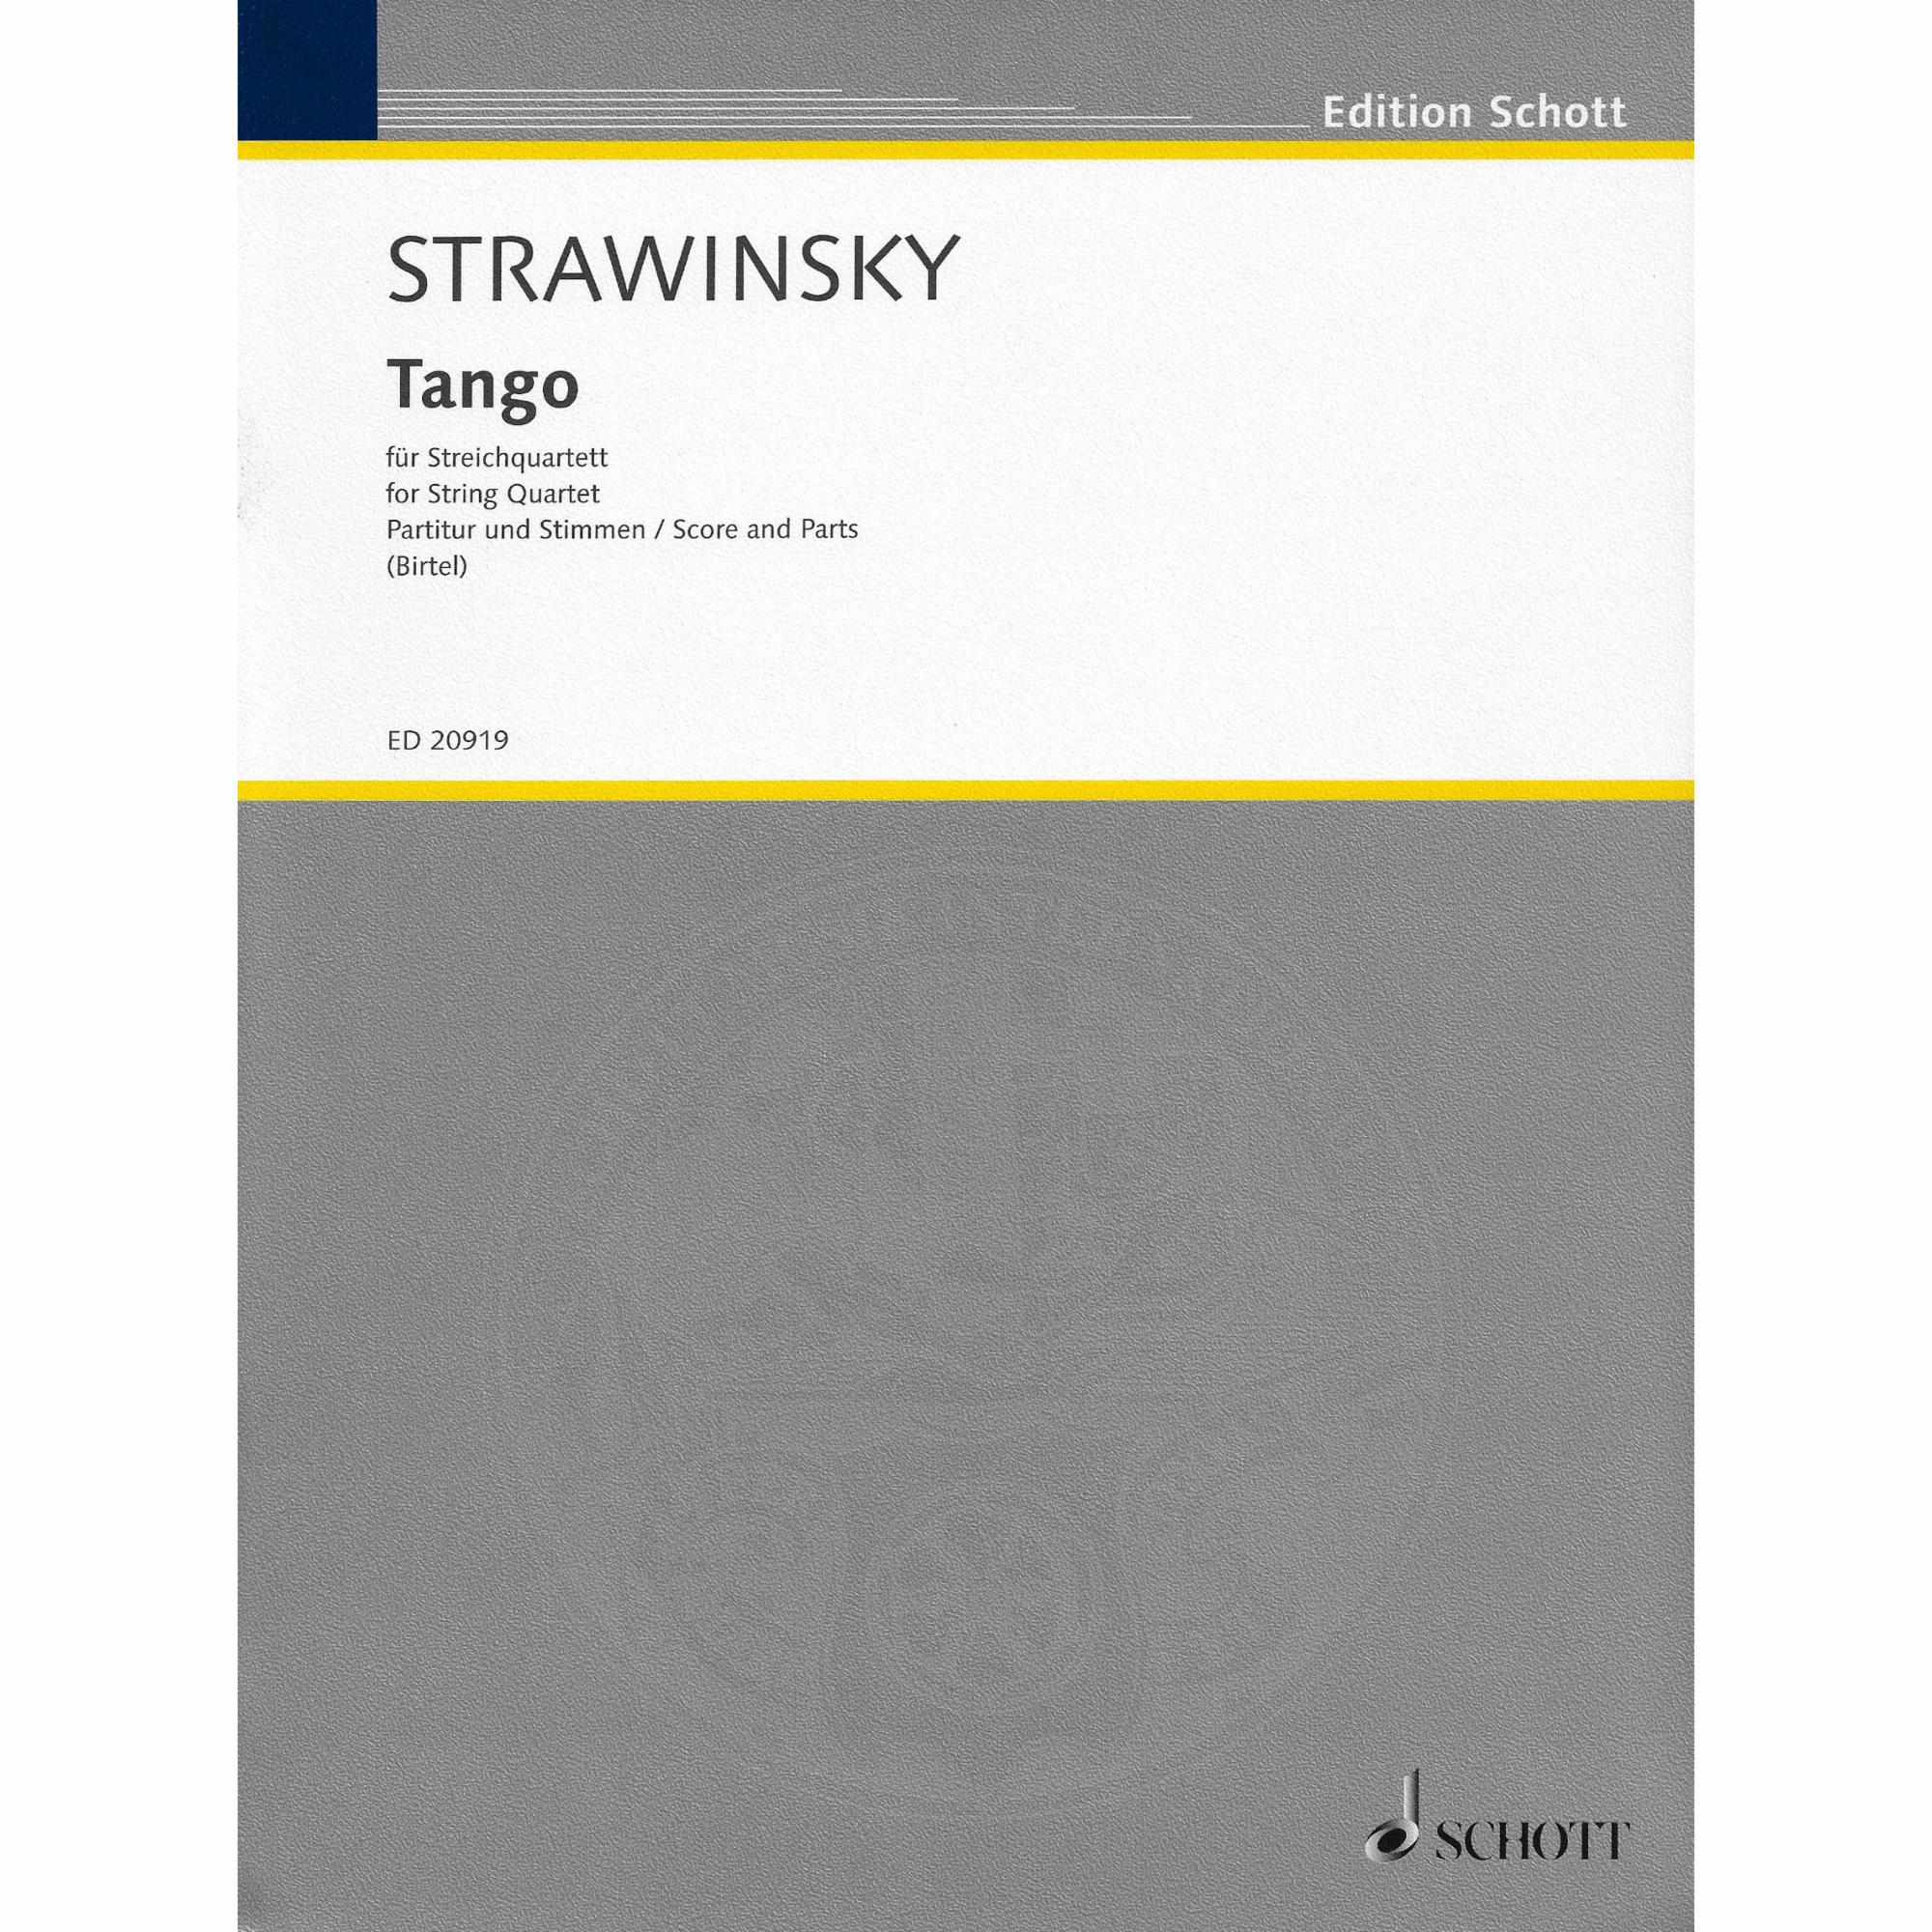 Stravinsky -- Tango for String Quartet